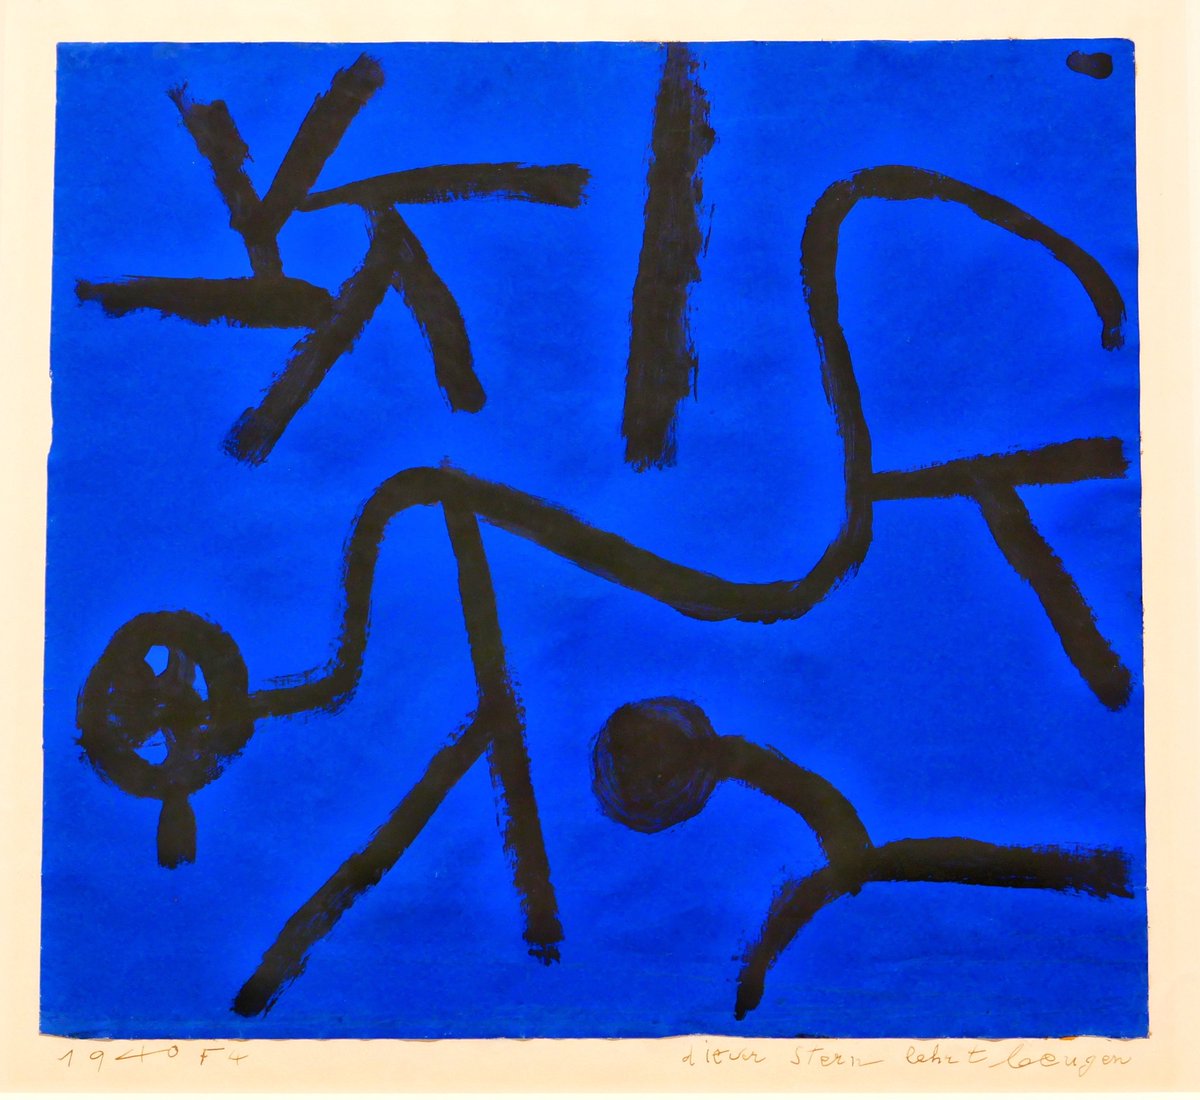 L'artista d'avui... és una criatura de la Terra, una criatura en la totalitat, és a dir, una criatura en una estrella enmig d'altres estrelles.

Paul Klee
A la Fundació Joan Miró de Barcelona #KleeFJM. Paul Klee i els secrets de la natura.